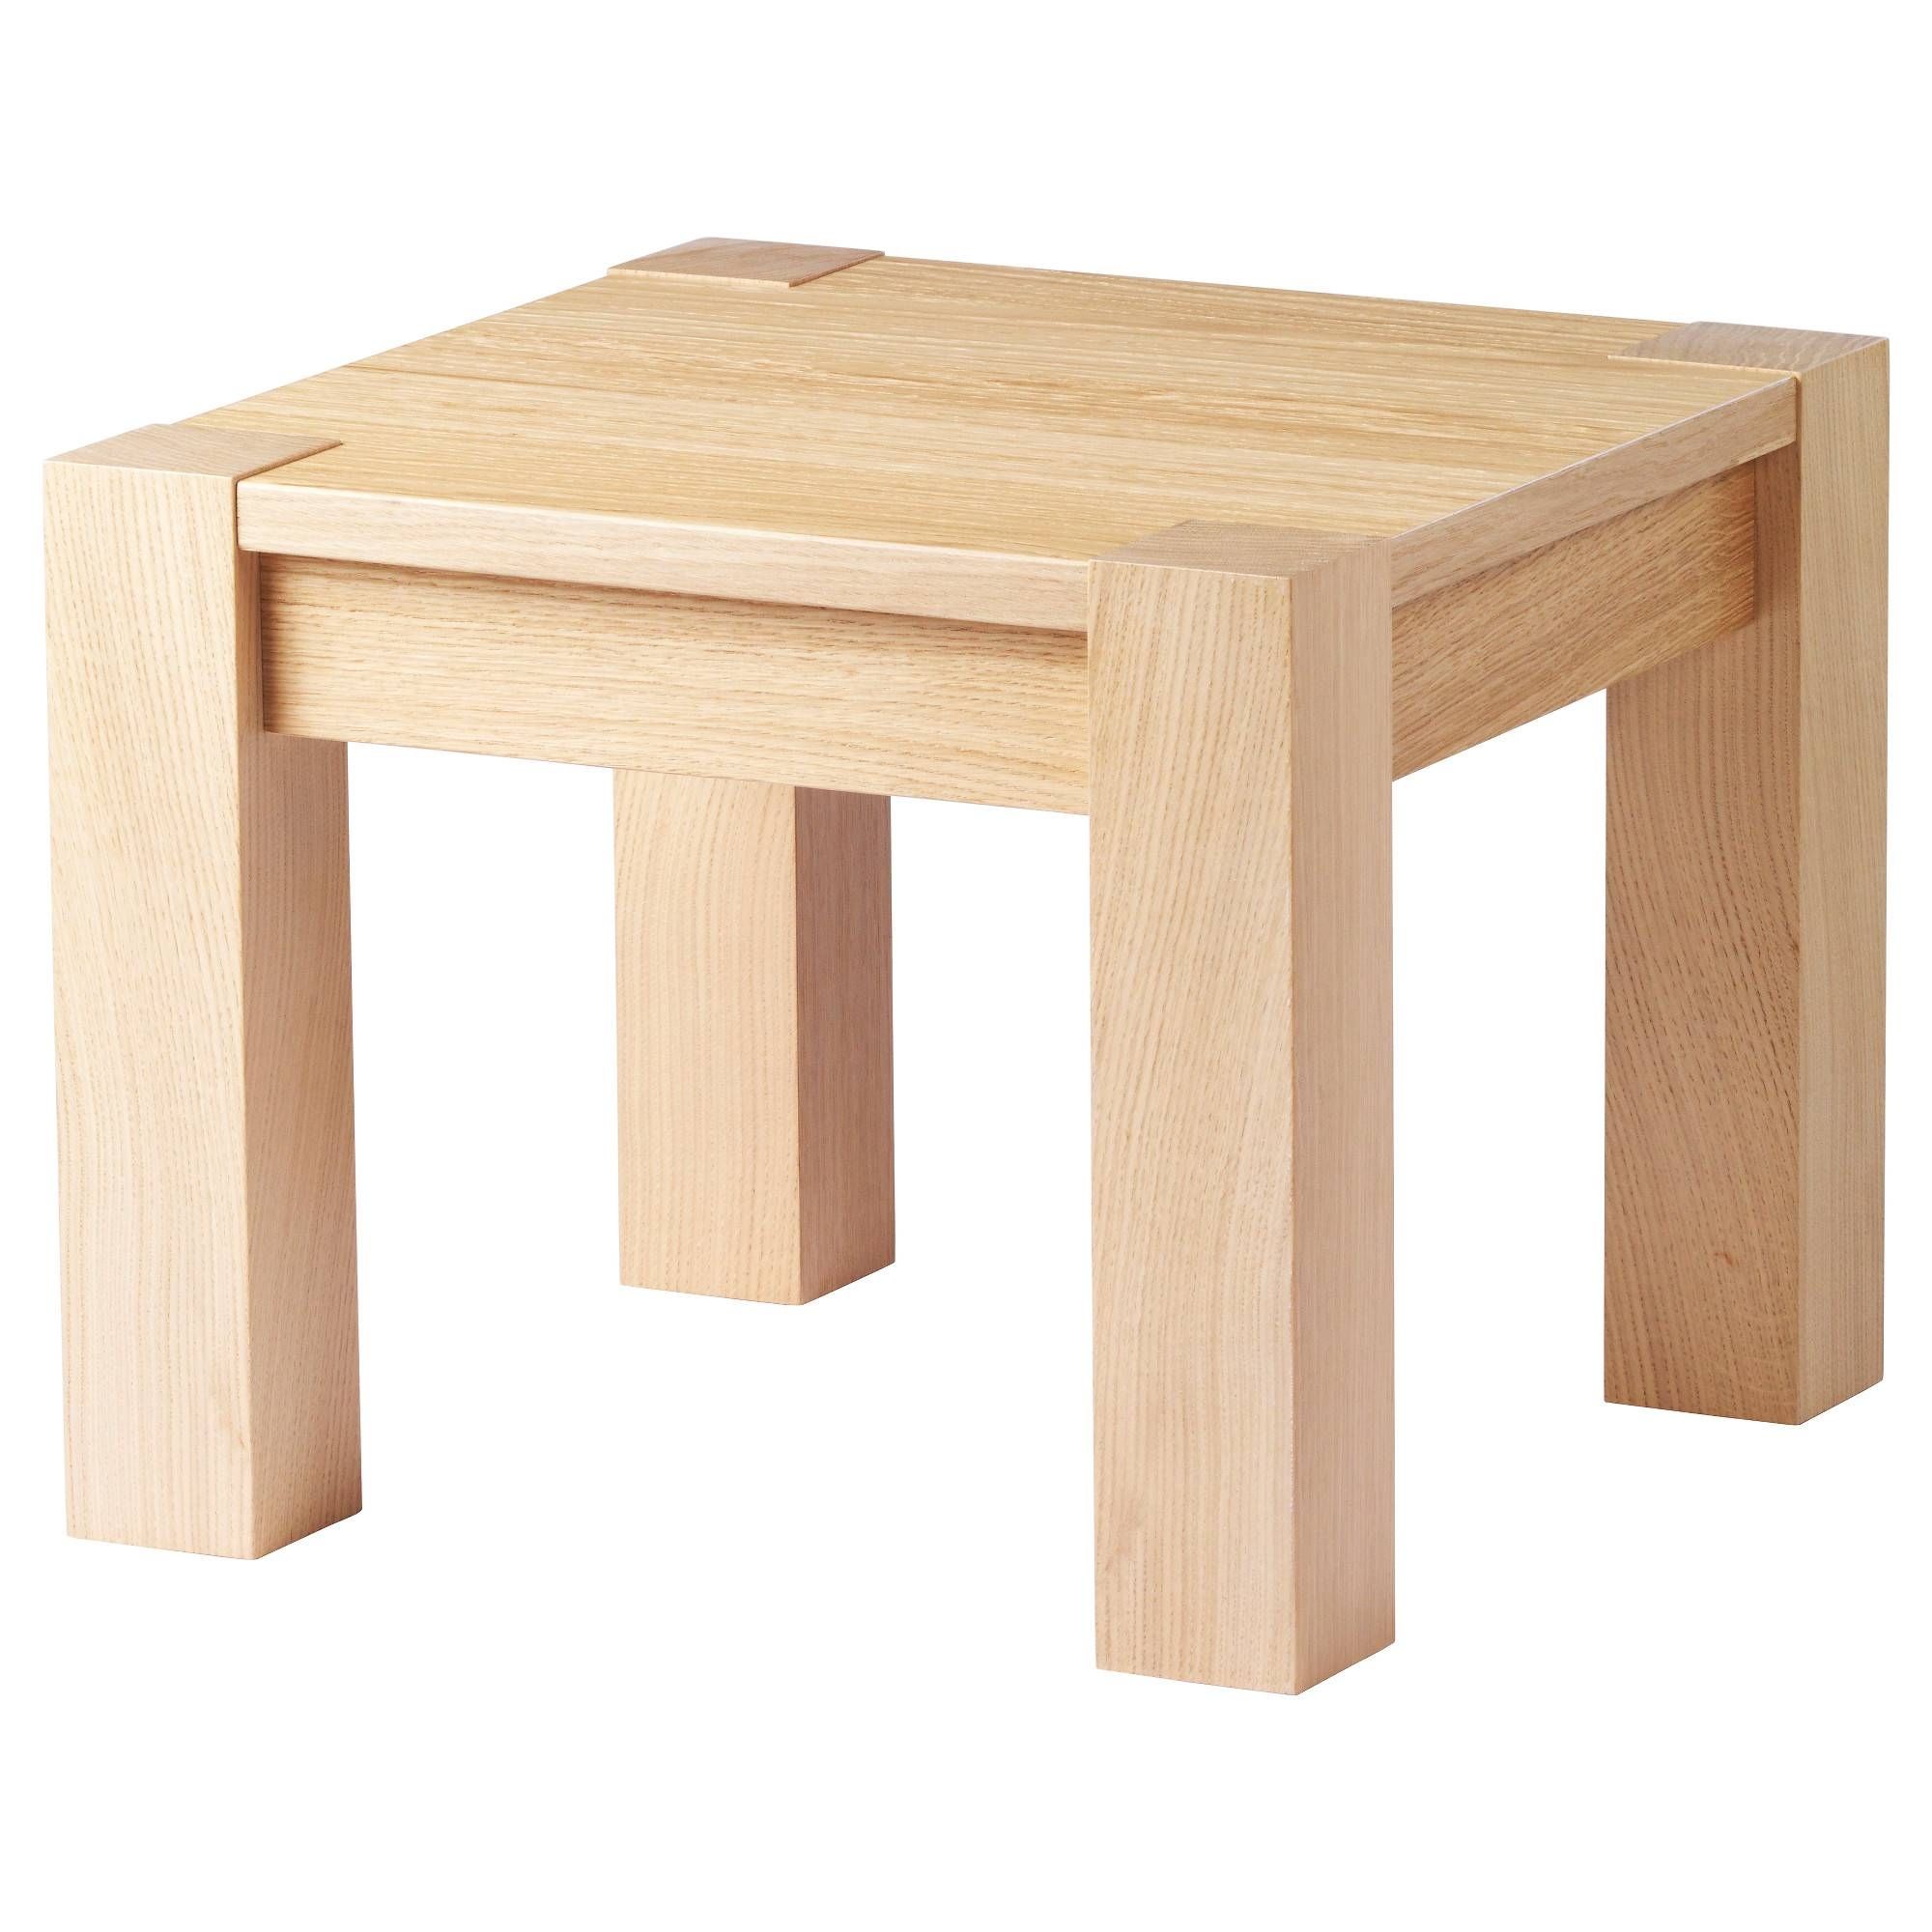 Högsby Coffee Table Oak Veneer 50x50 Cm – Ikea With Oak Veneer Coffee Tables (View 3 of 15)